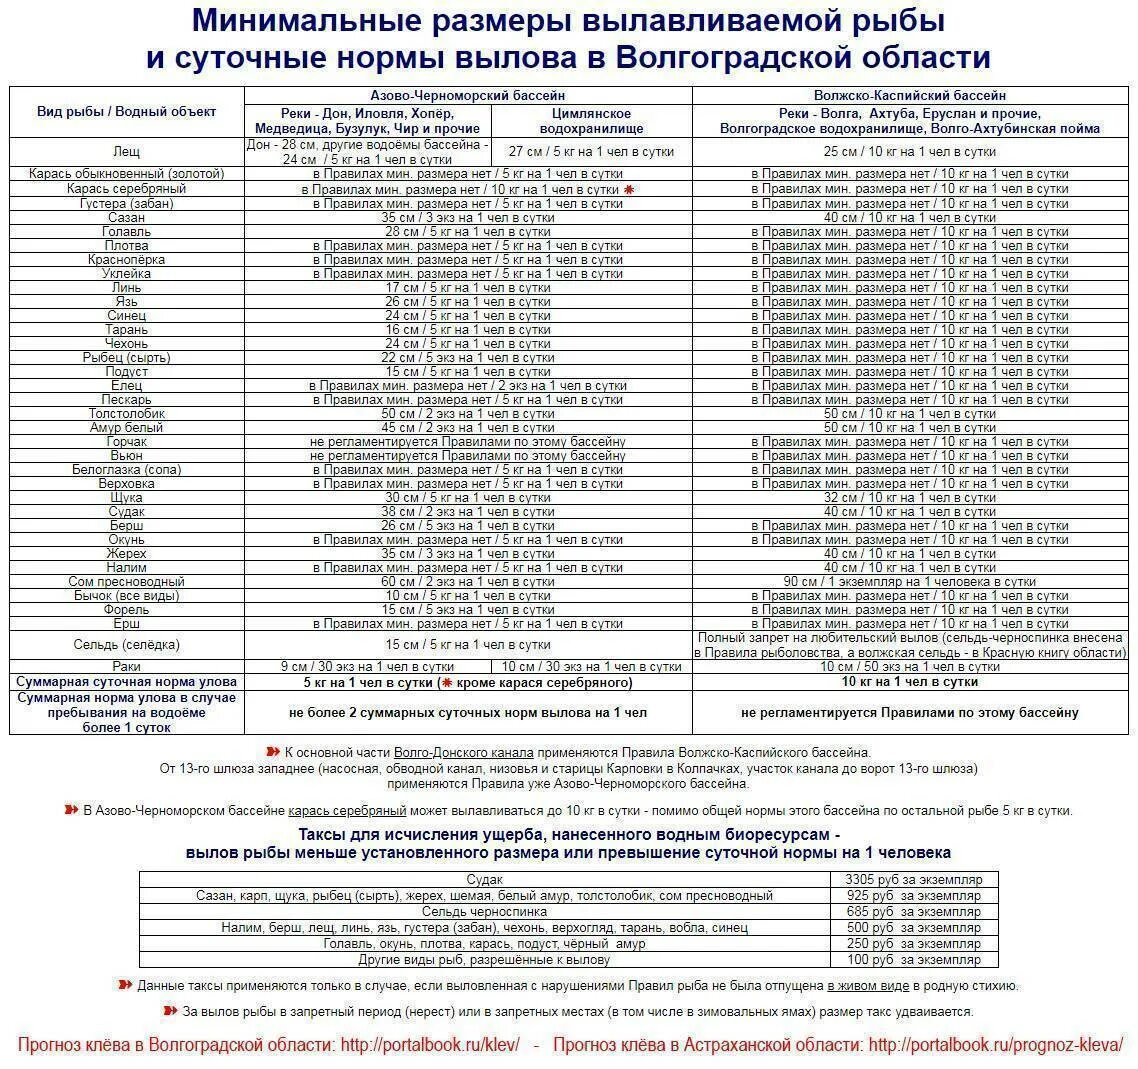 Таблица нормы вылова рыбы. Разрешенный размер рыбы для вылова в Волгоградской области 2020. Норма вылова и размер рыбы в Волгоградской области. Нормы и размер вылова рыбы в Астраханской области.